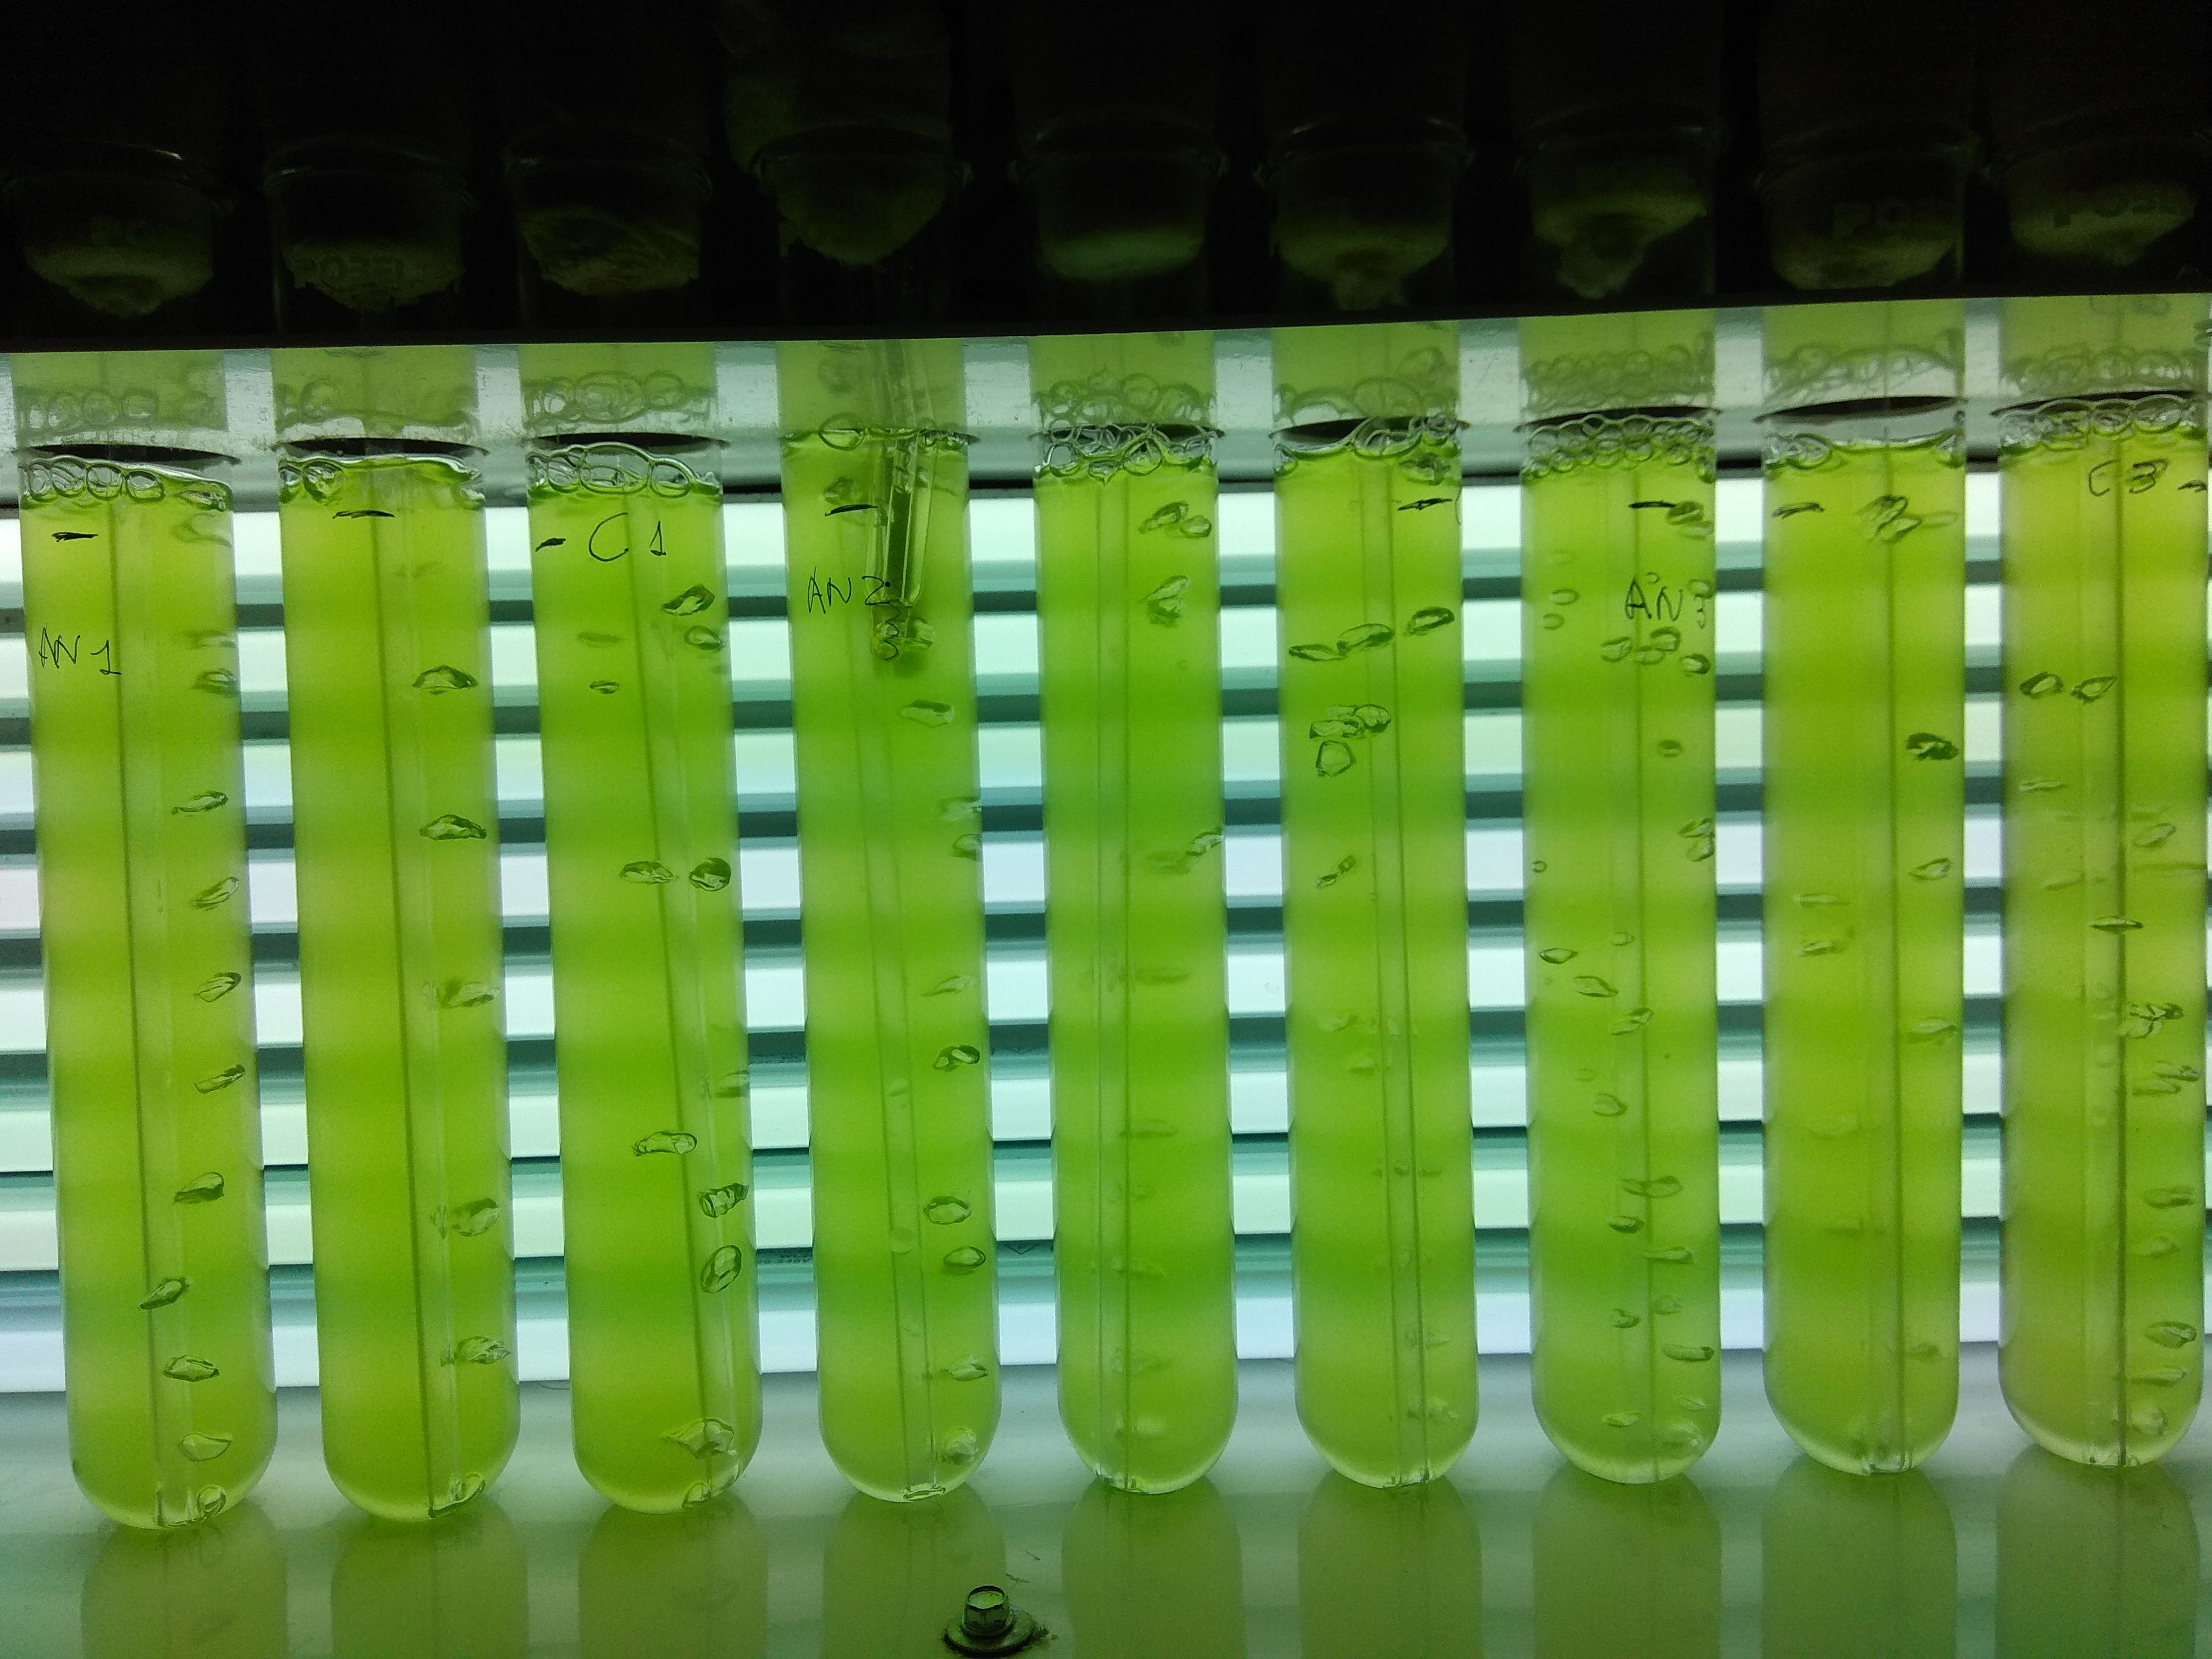 Imagen que muestra tubos de ensayo con sustancia líquida repleta de microalgas